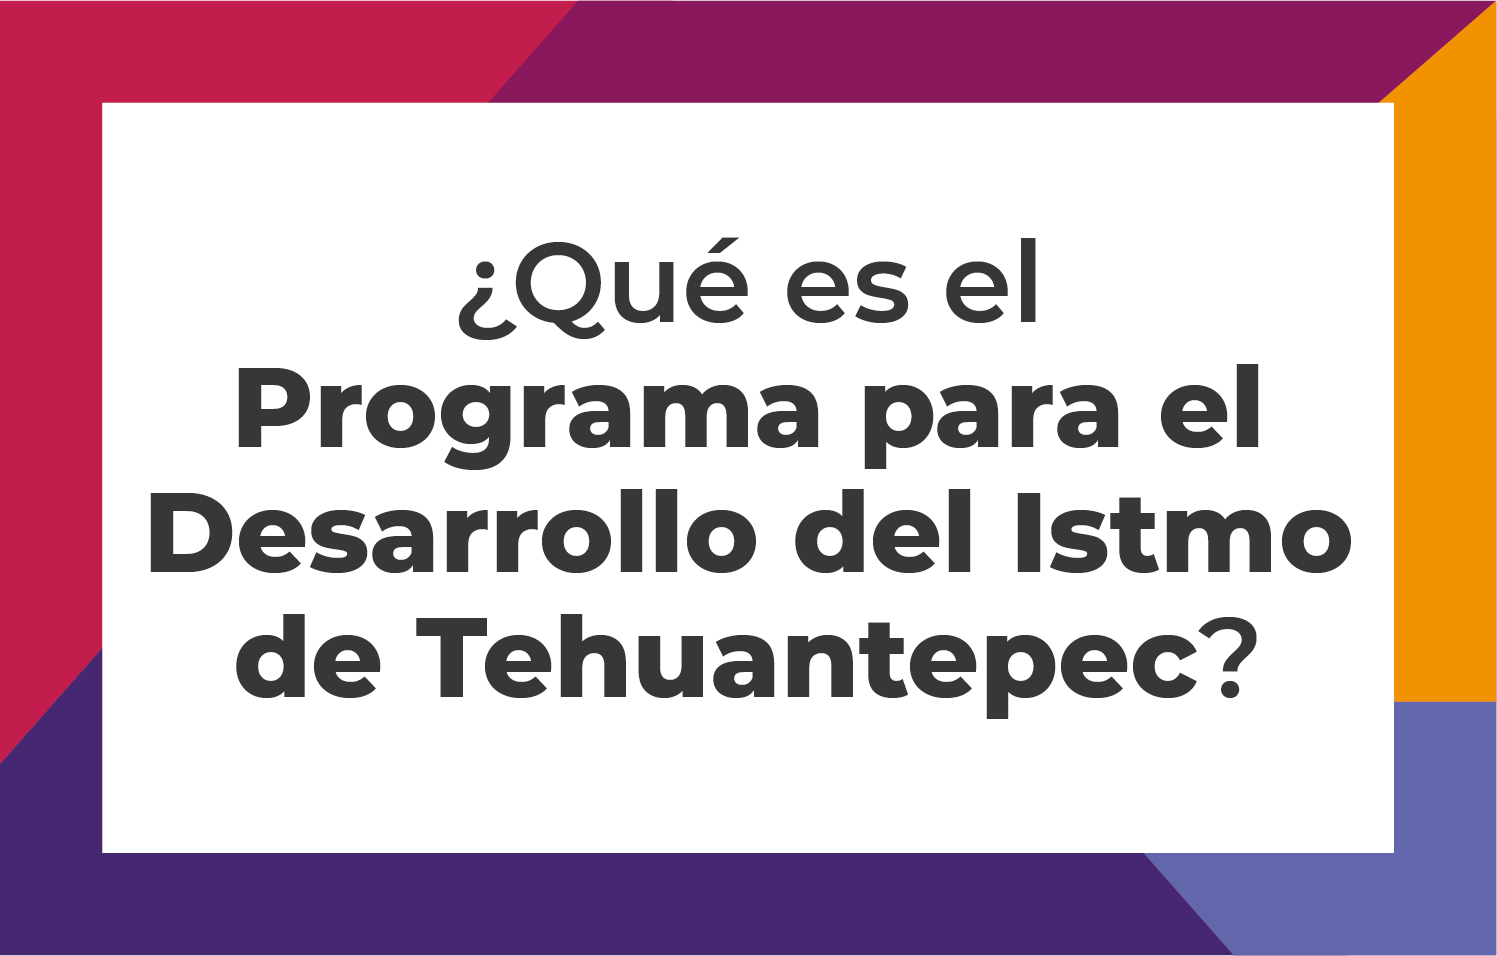 Programa para el Desarrollo del Istmo de Tehuantepec